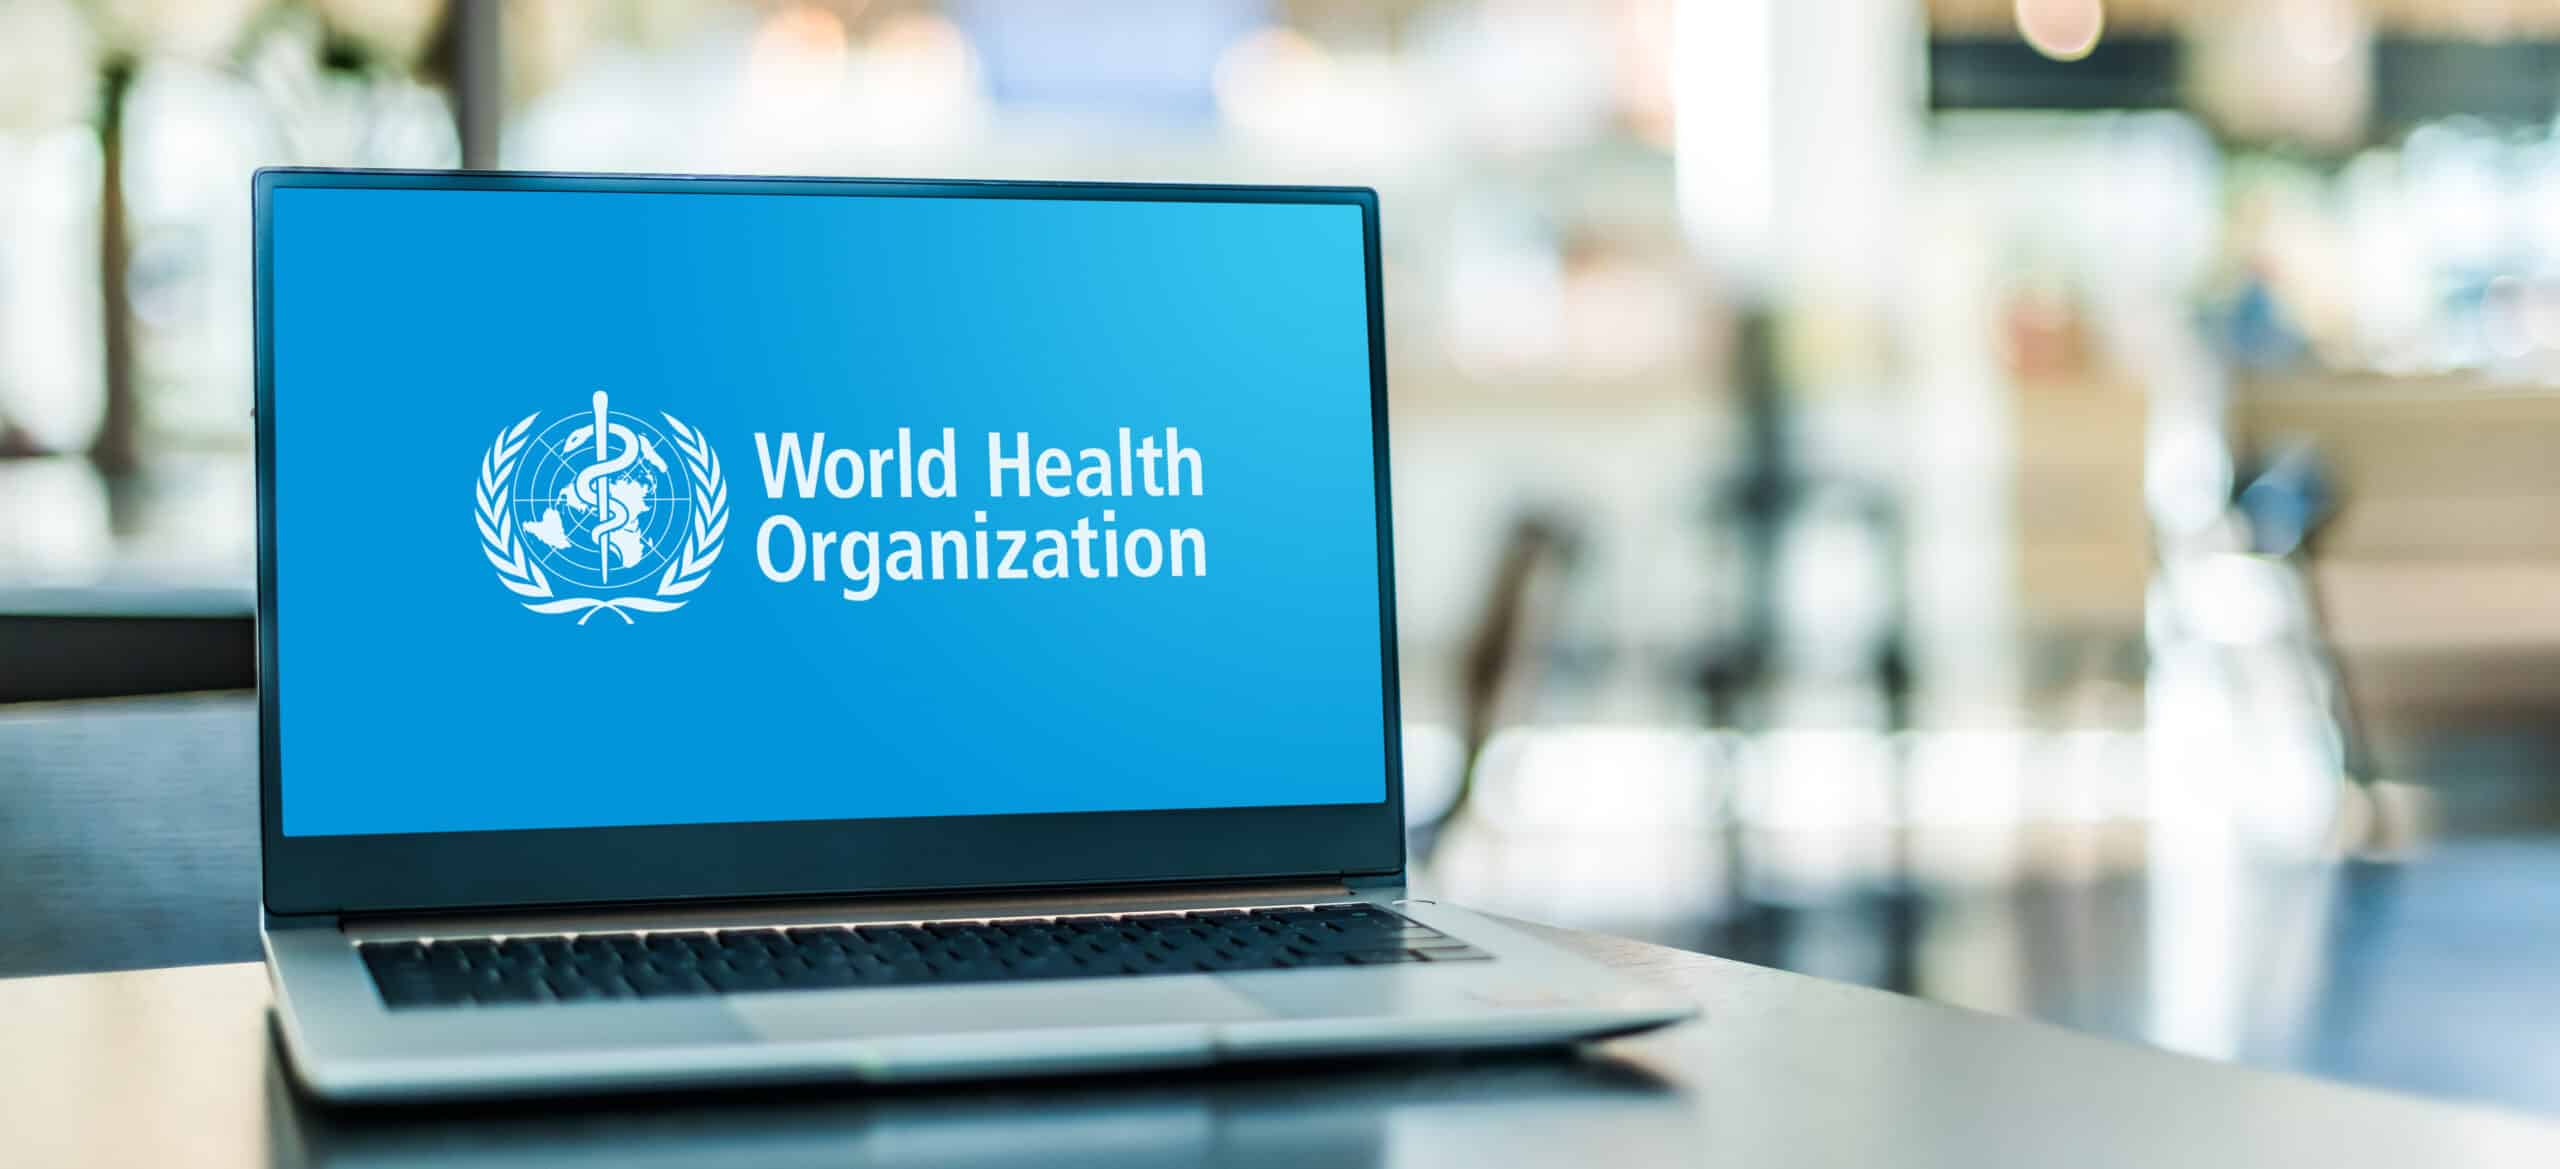 OMS lança relatório sobre transformação da economia visando a saúde para todos